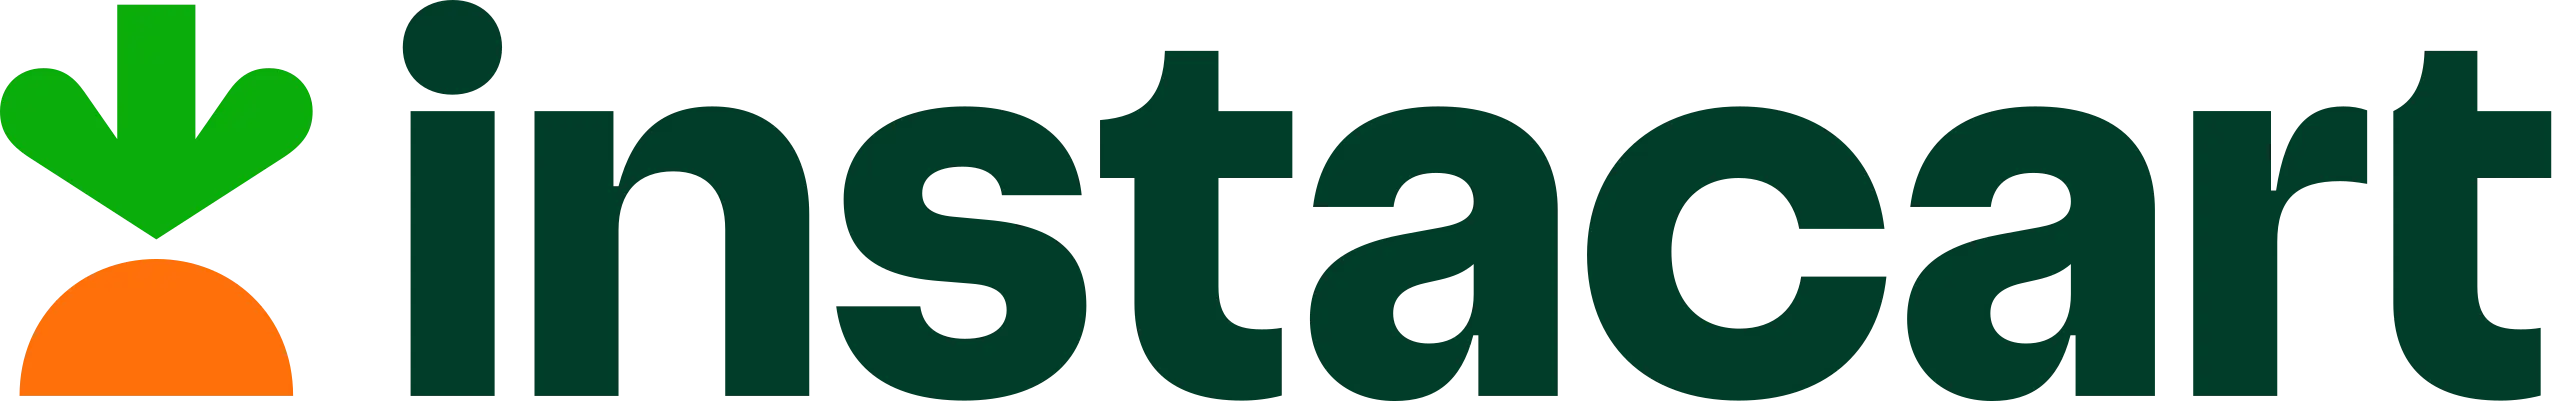 Instacart logo and wordmark